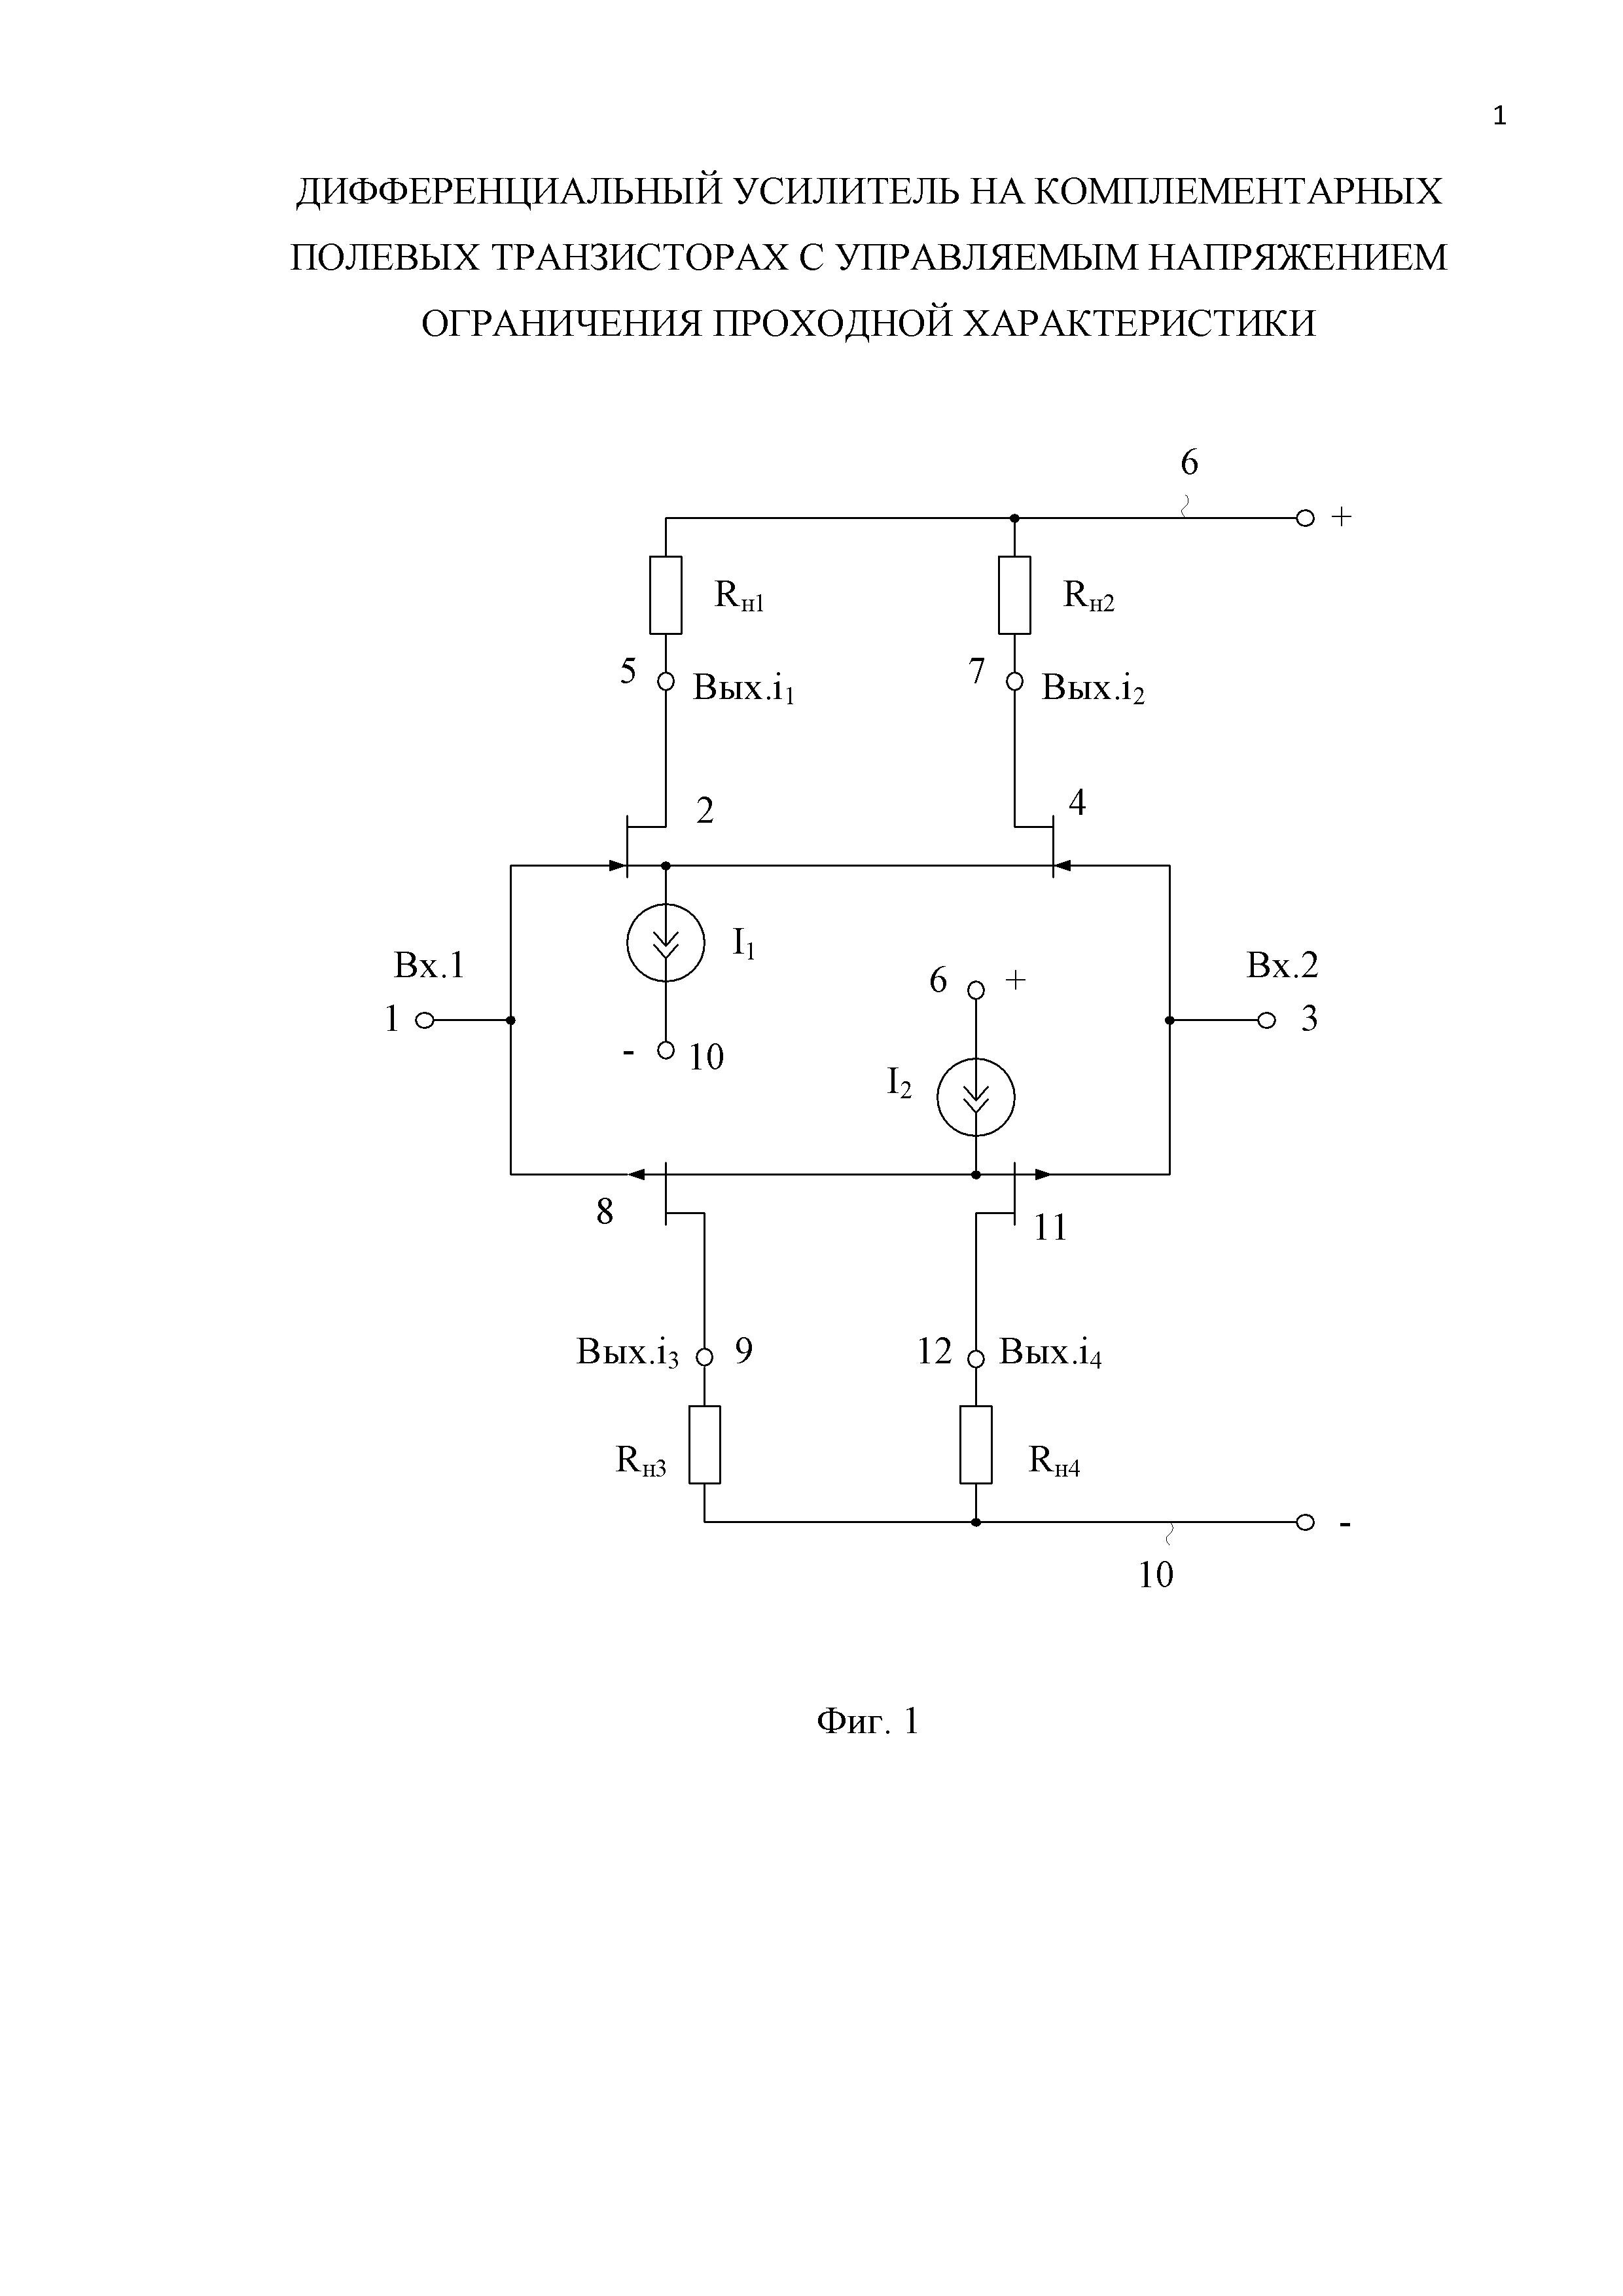 Дифференциальный усилитель на комплементарных полевых транзисторах с управляемым напряжением ограничения проходной характеристики